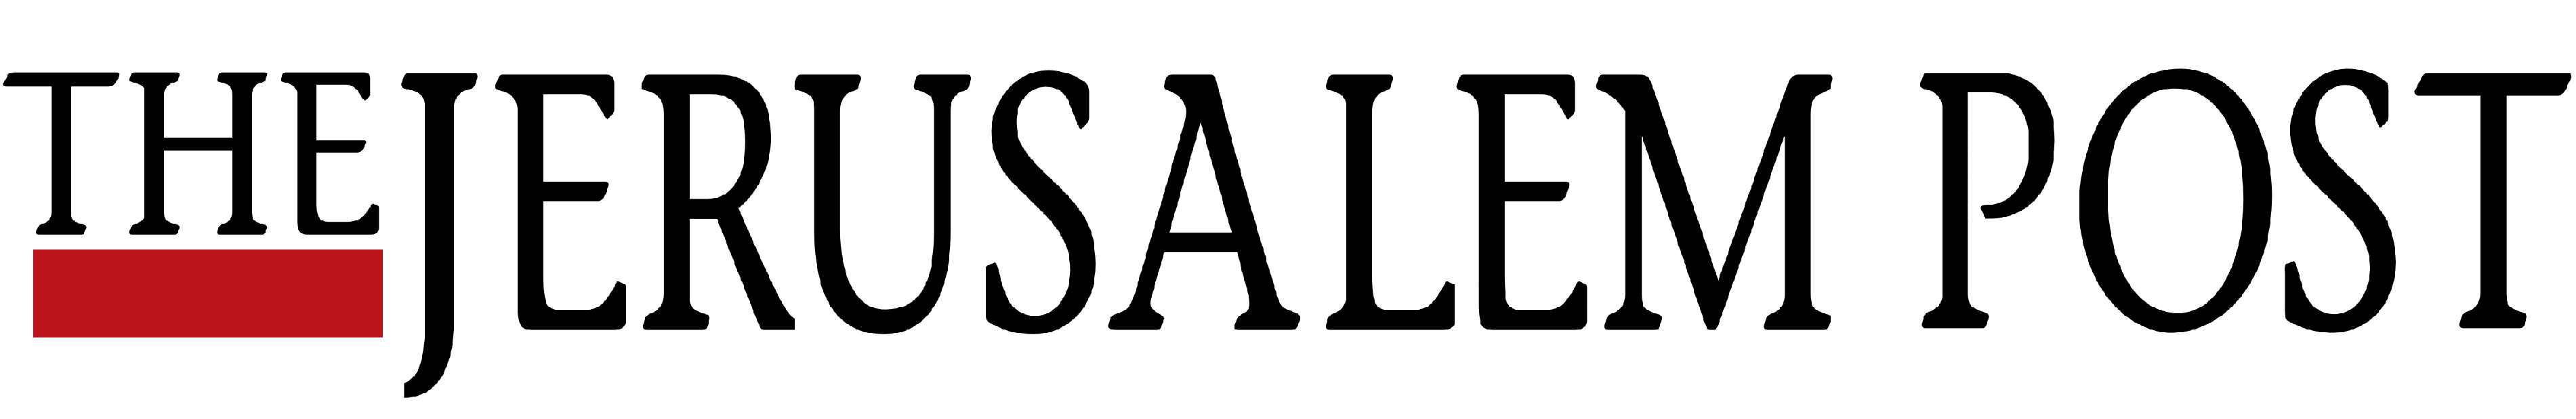 The jerusalem post logo